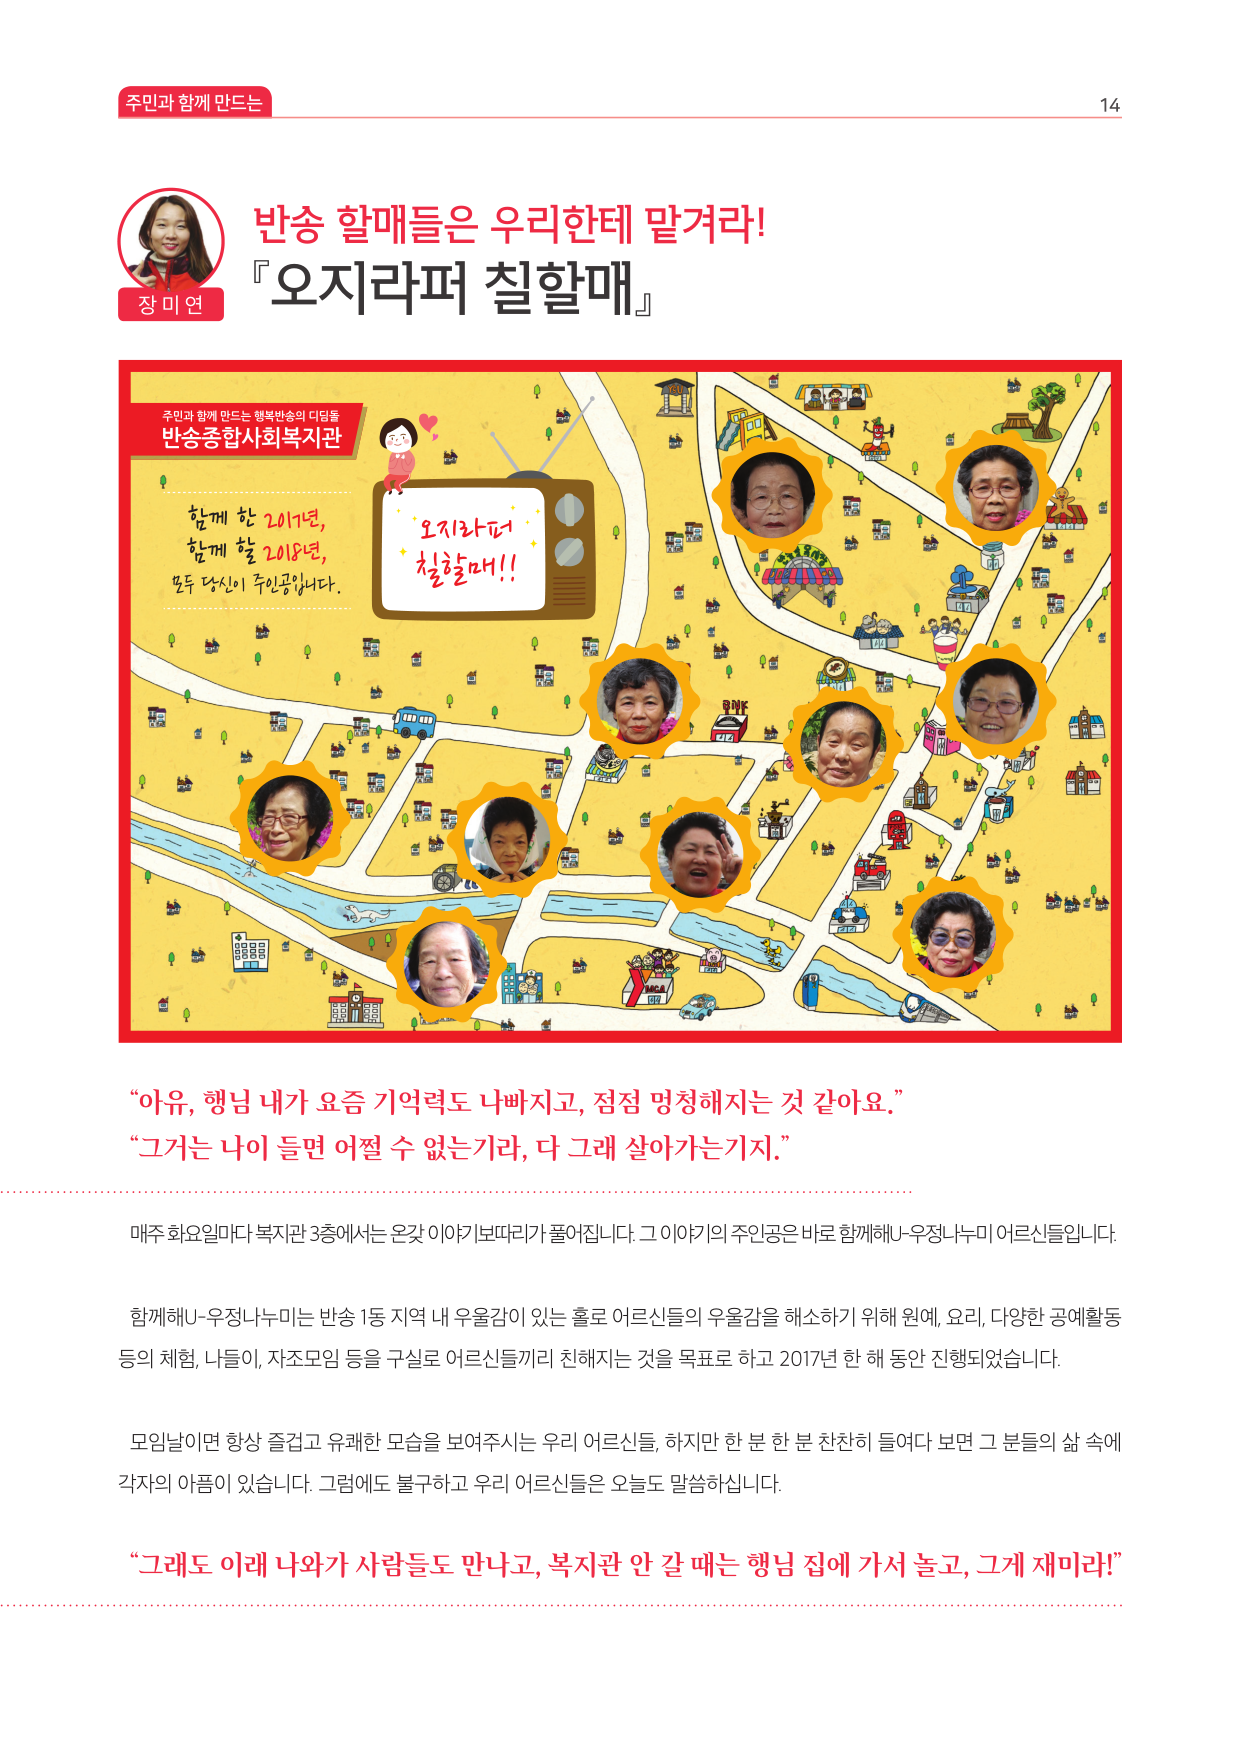 반송종합사회복지관연간소식지(2017)-14.jpg